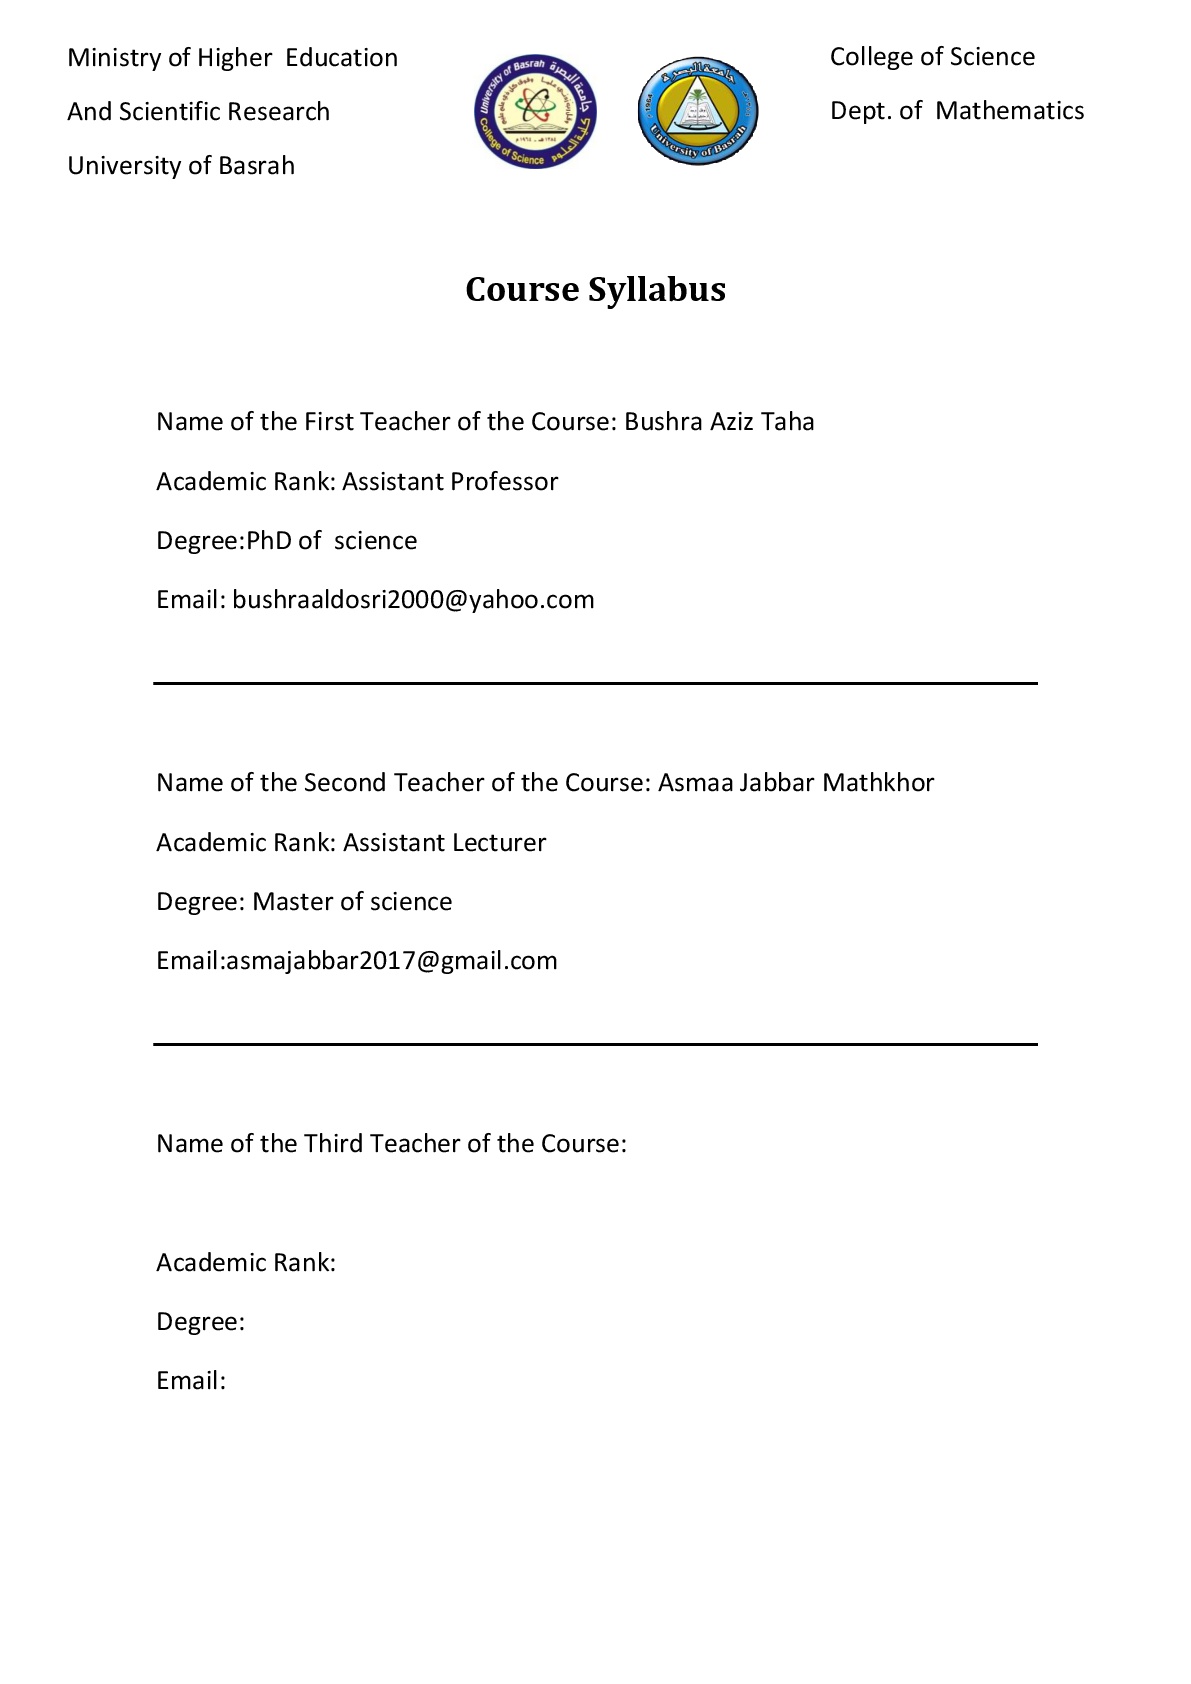 Course Syllabus r335 001